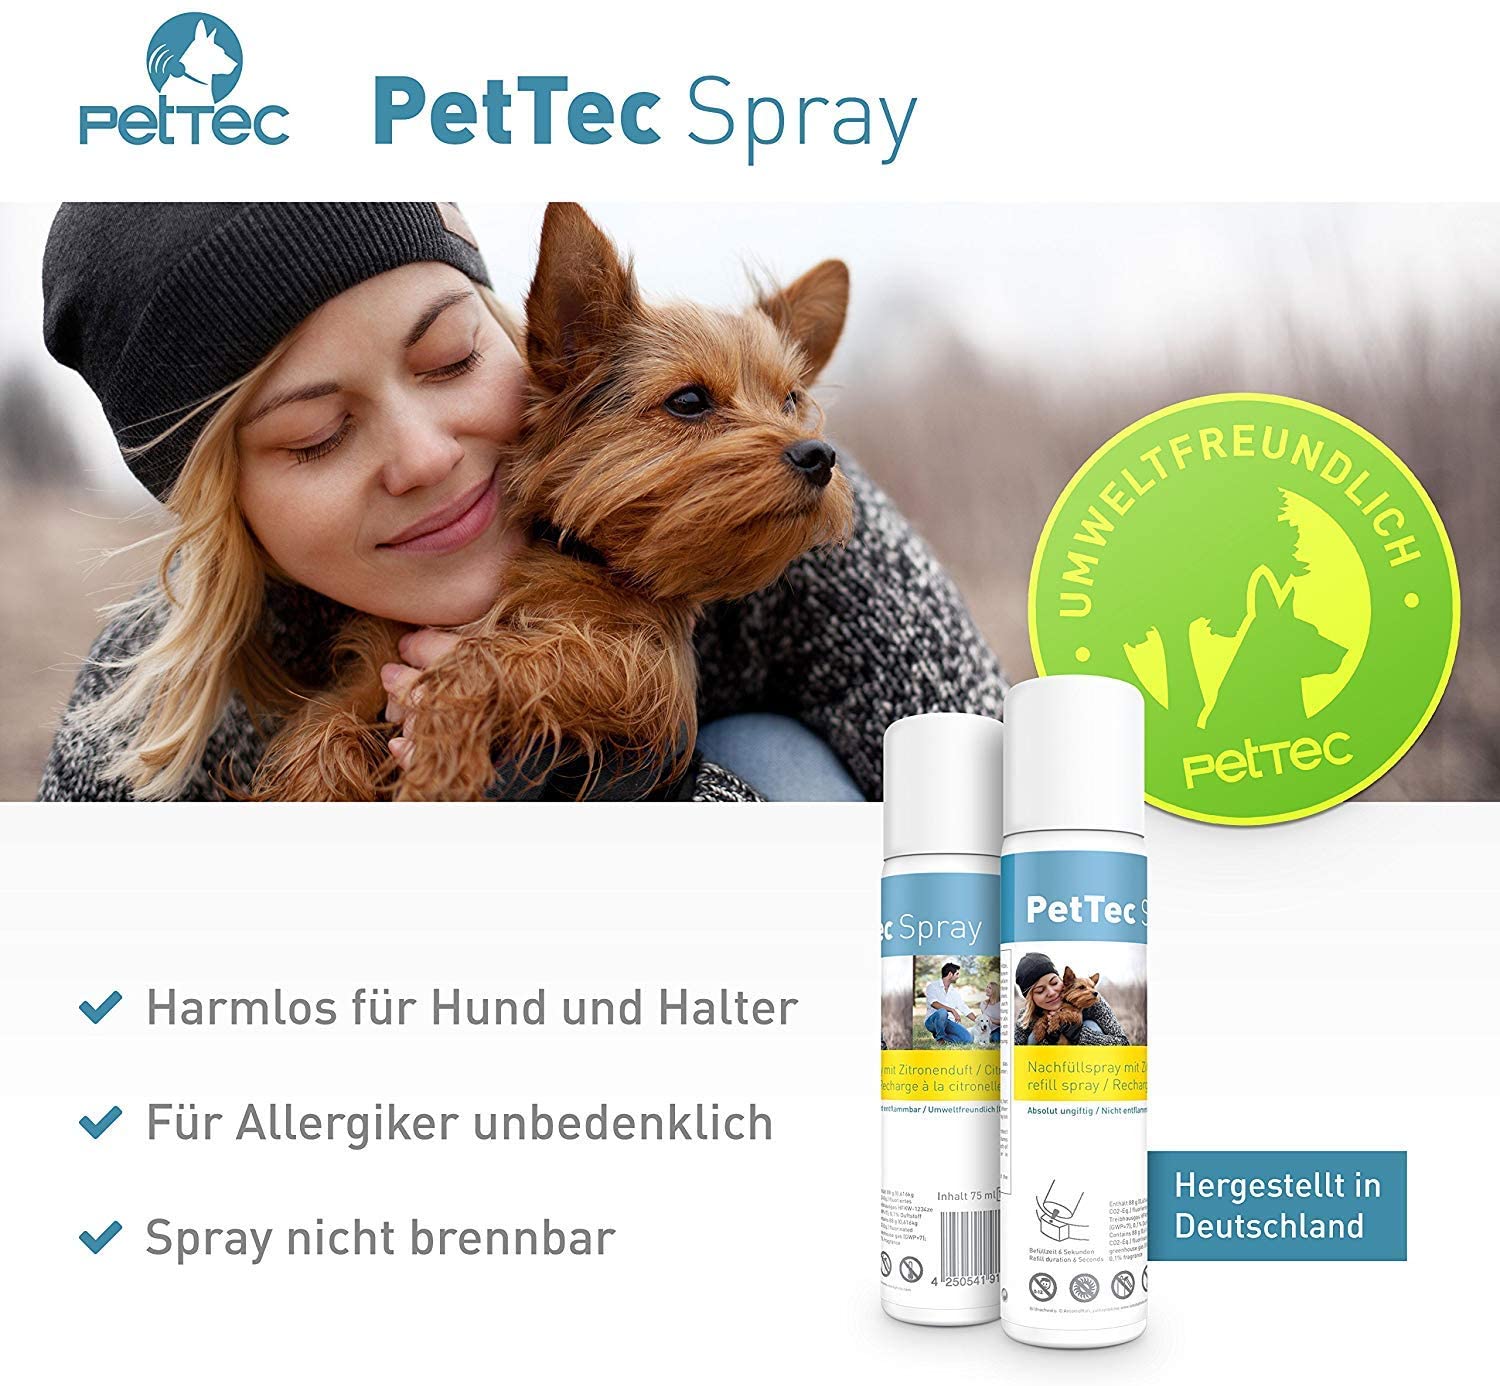  PetTec Collar de Perro con Spray Automático Entrenador Anti Ladridos, de Entrenamiento Inmediato e Inofensivo, Seguro para Perros y Personas + 2 Latas de Repuesto y Pilas Incluidas (Citronela) 